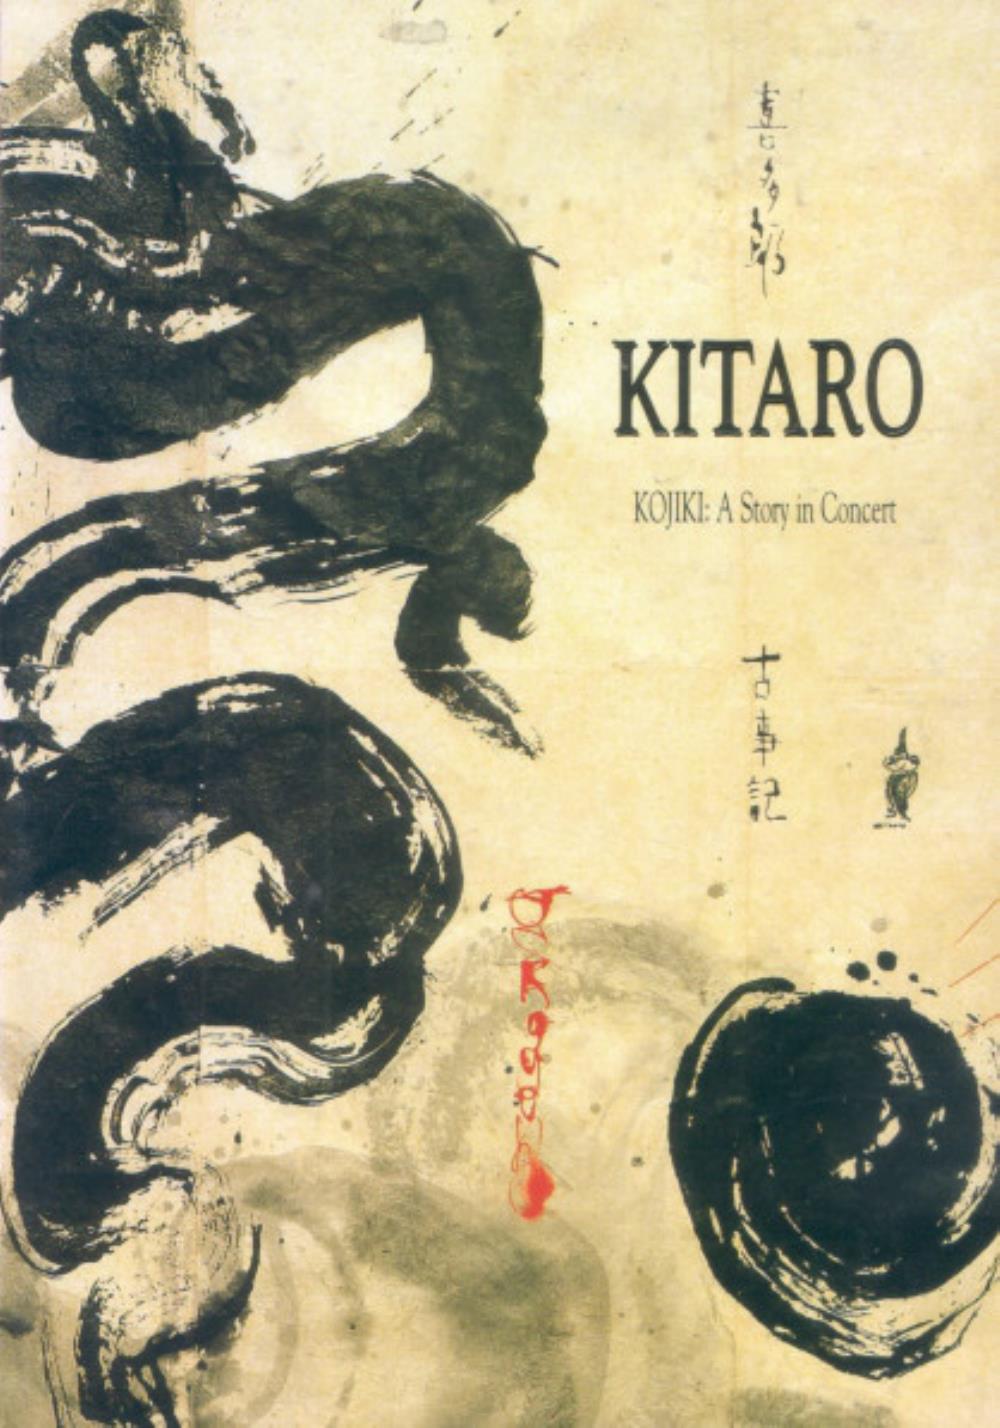 Kitaro - Kojiki: A Story in Concert CD (album) cover